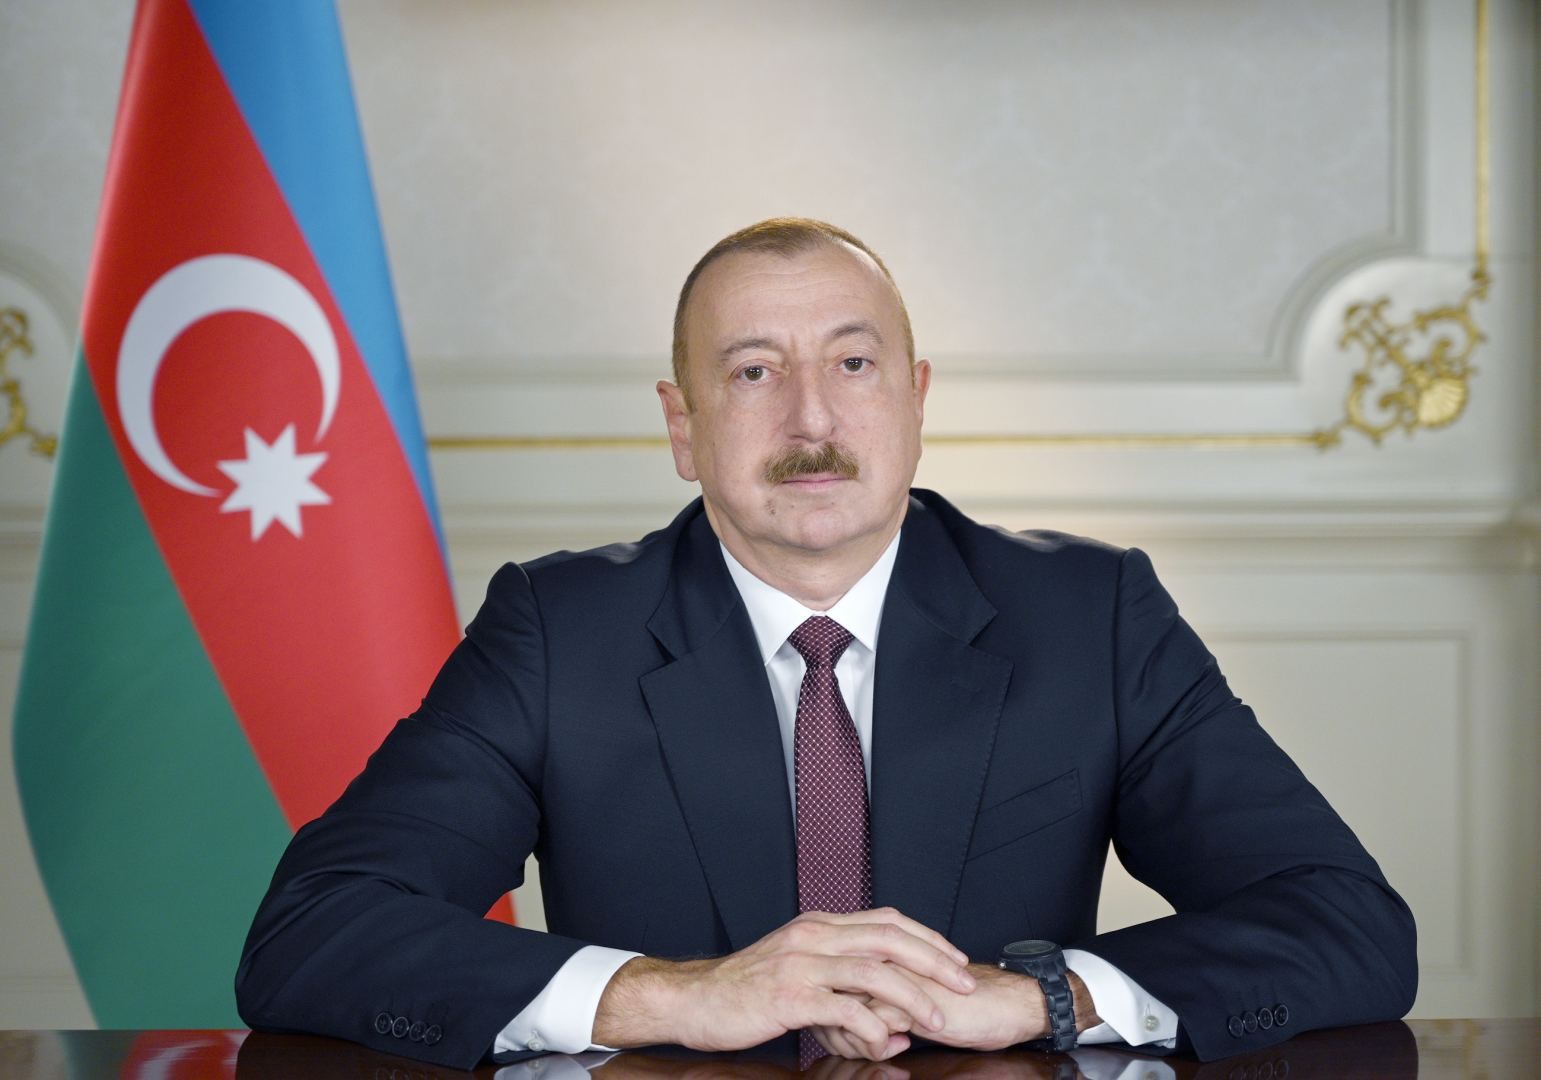 Ильхам Алиев направил письмо Саломе Зурабишвили по случаю Дня независимости Грузии